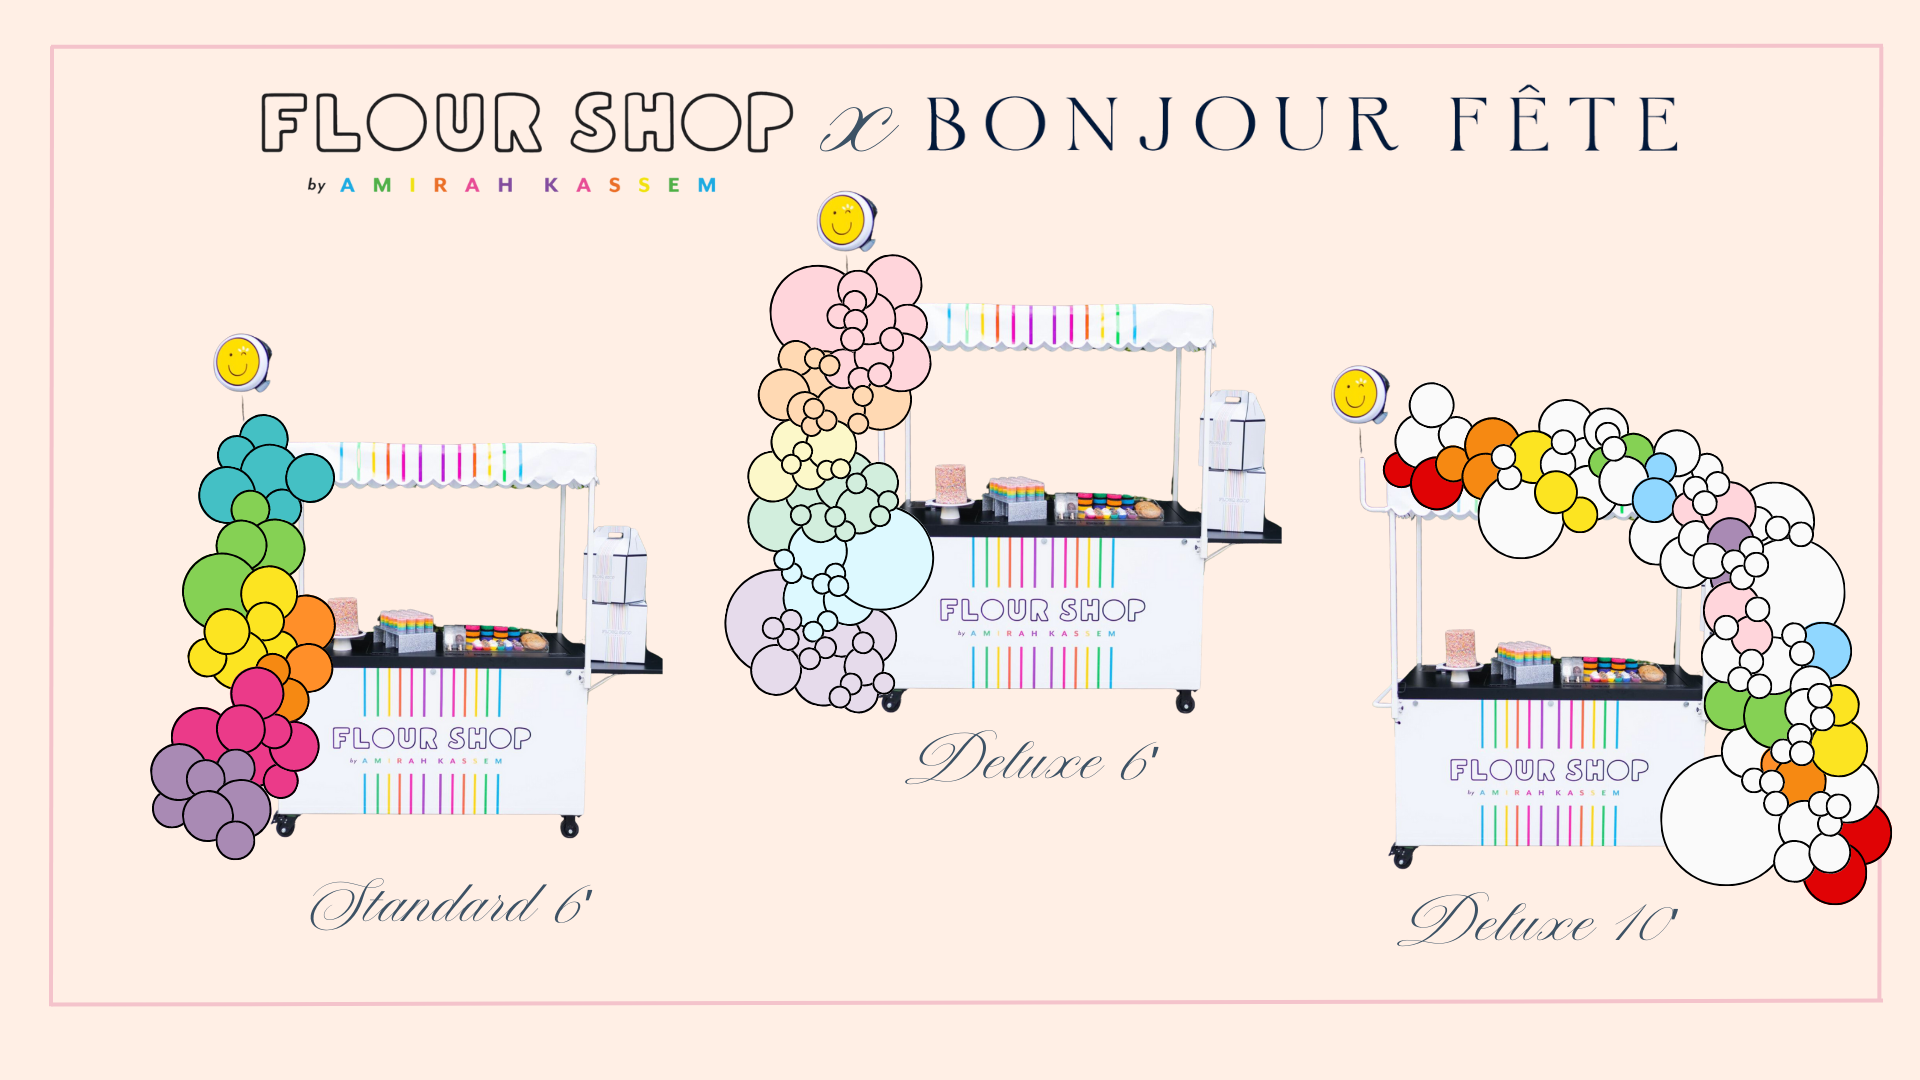 Bonjour Fête balloon garland styles for the Flour Shop dessert cart.